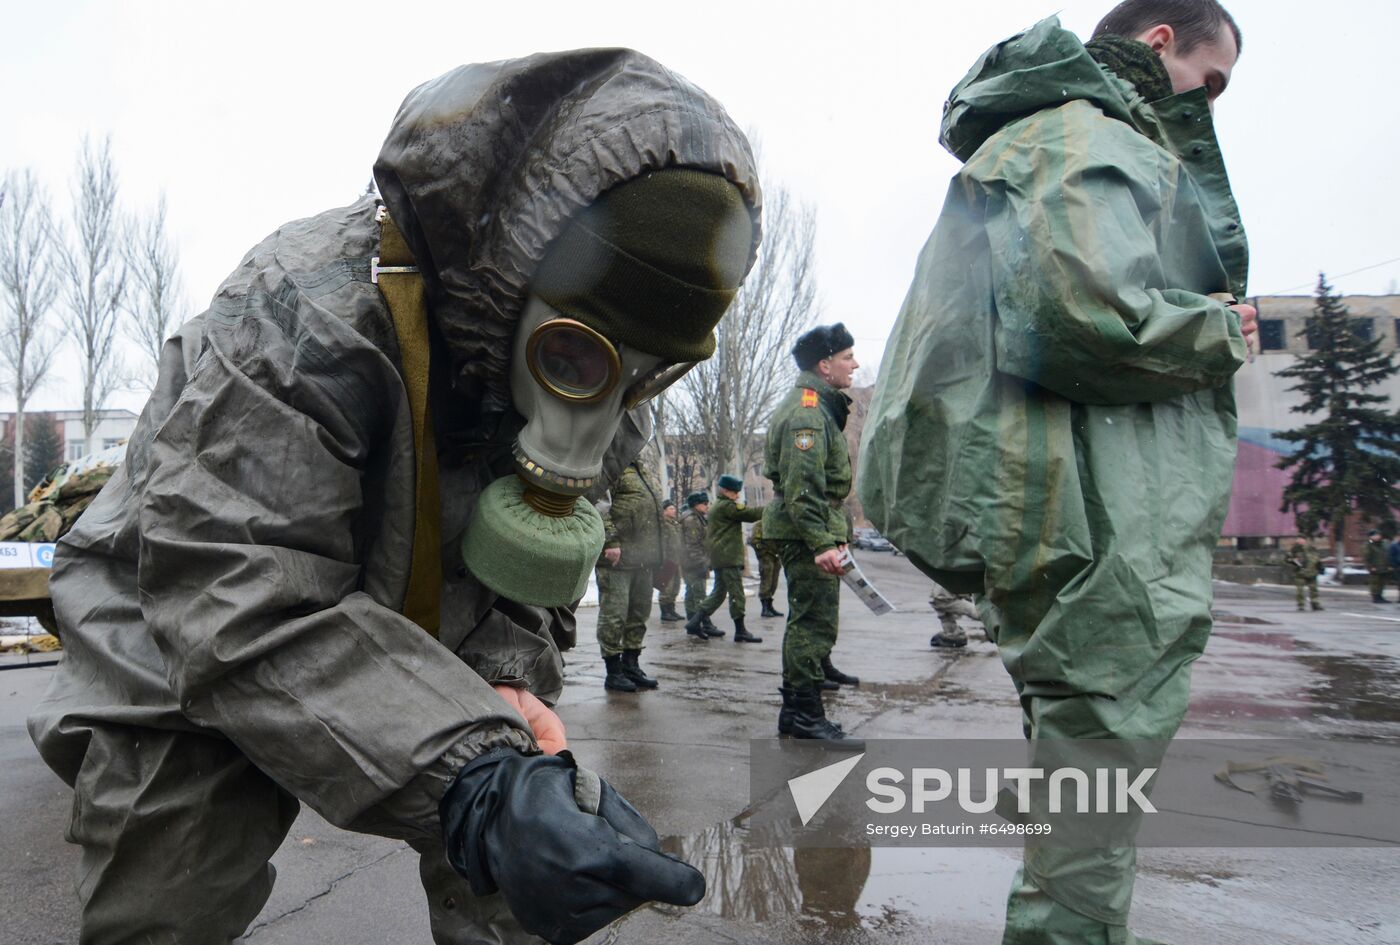 Ukraine DPR Military Training